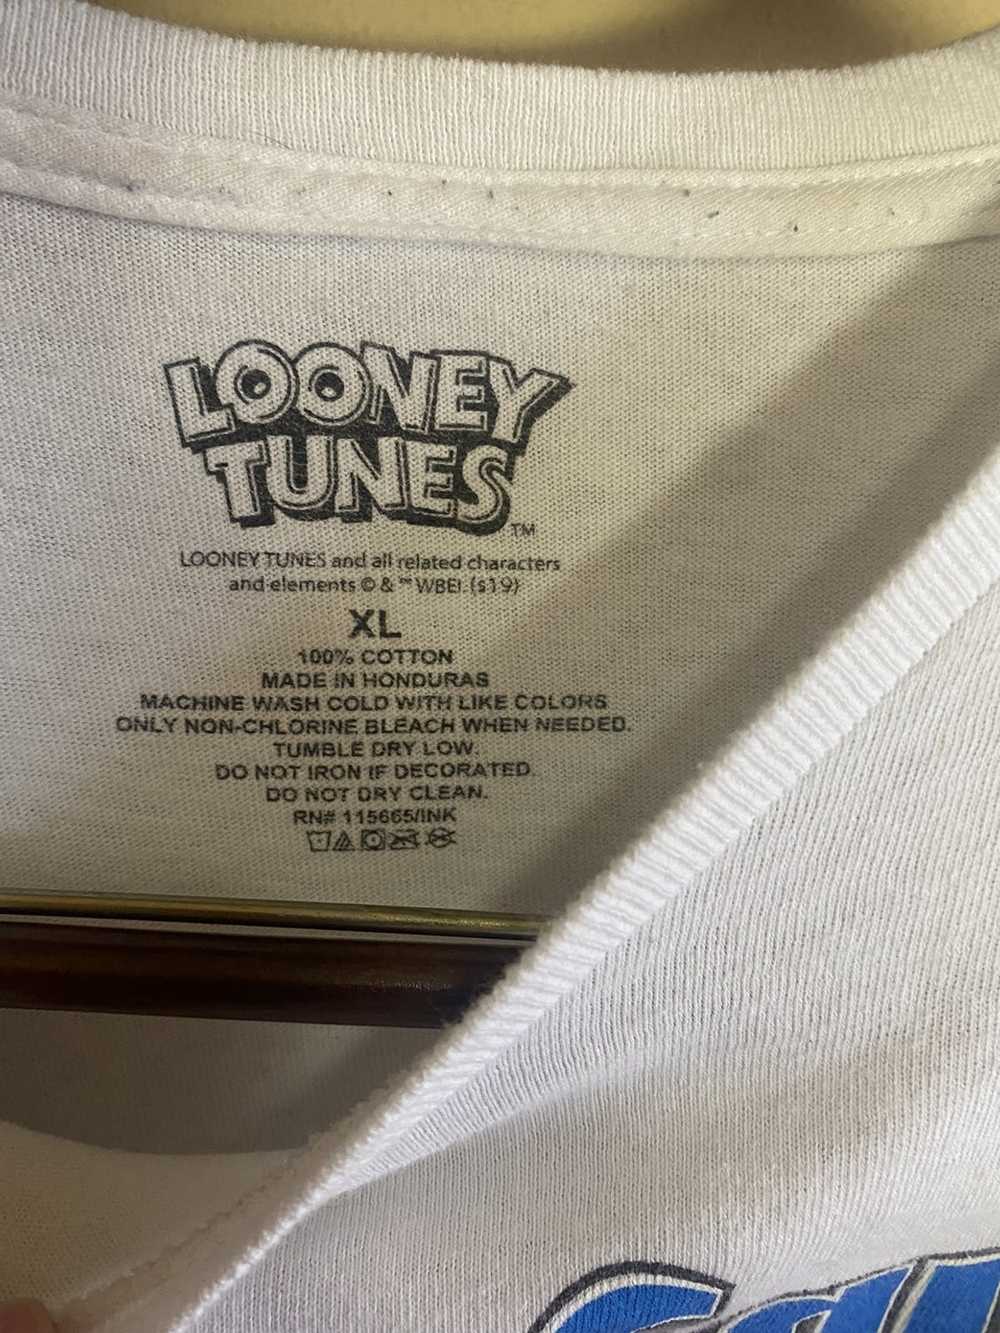 Vintage vintage looney tunes tune squad - image 3